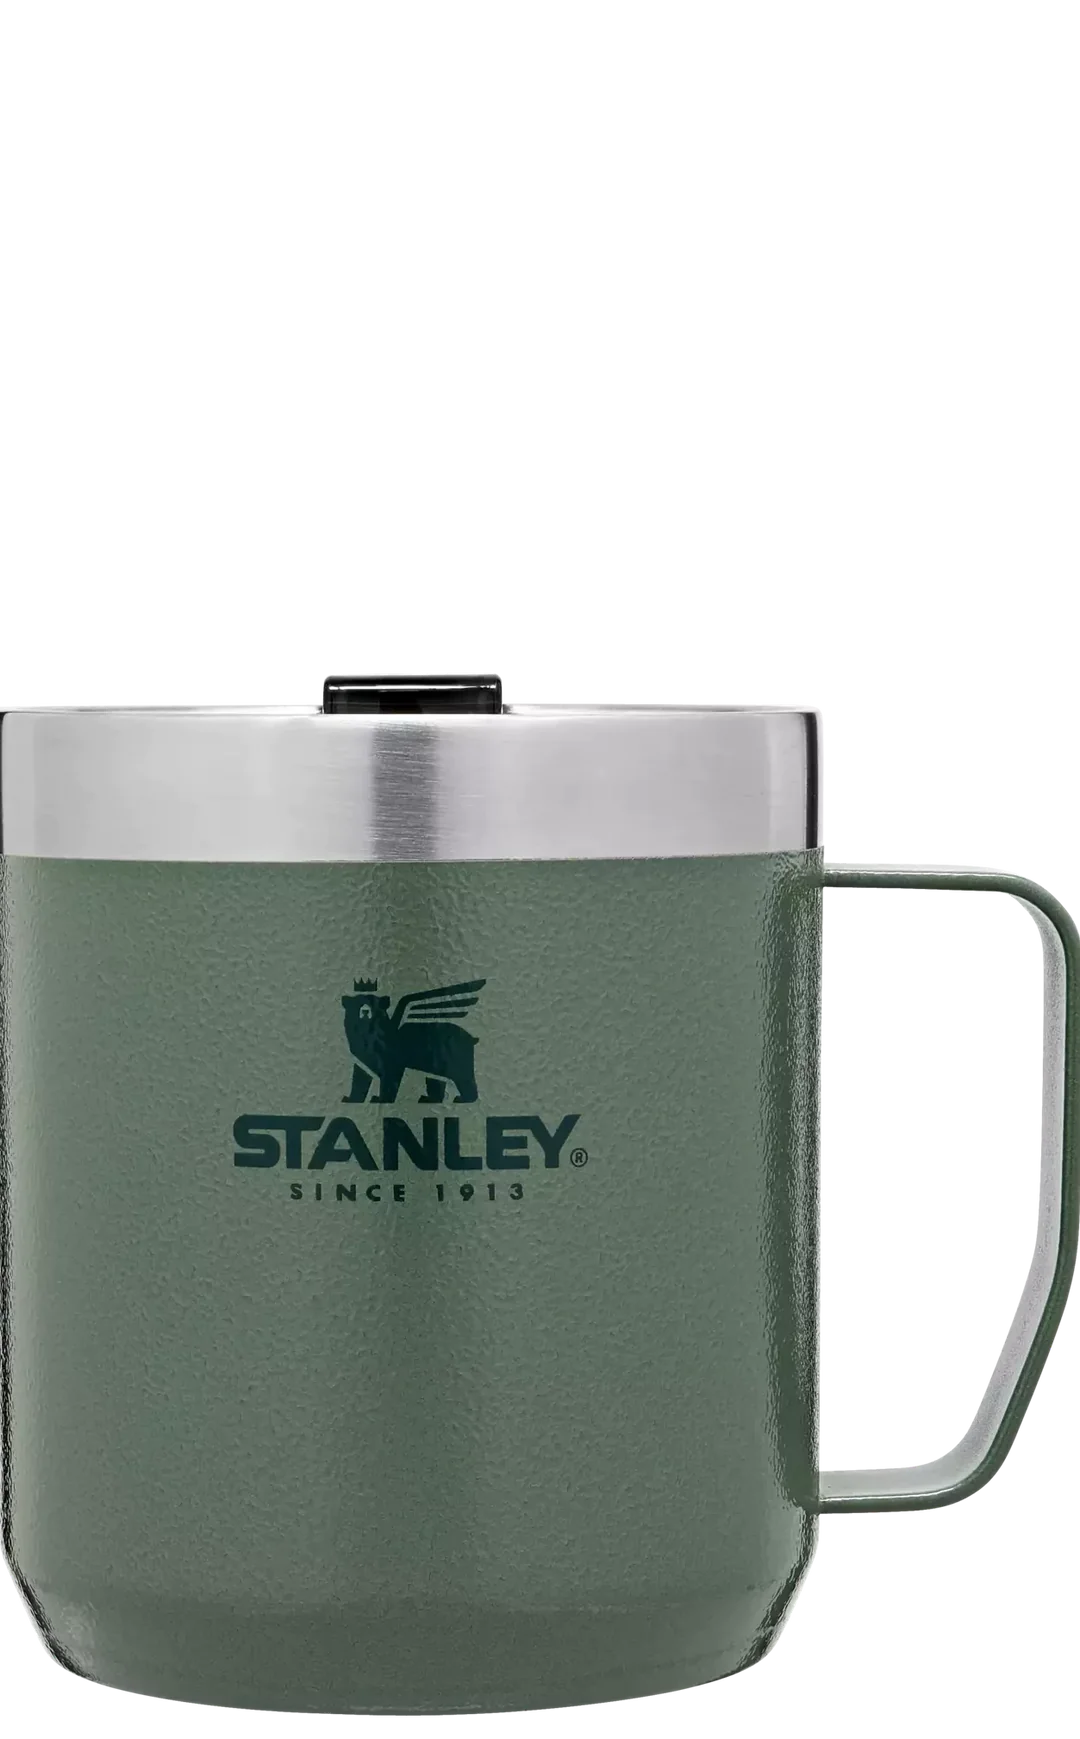 Stanley Legendary Camp Mug 12oz